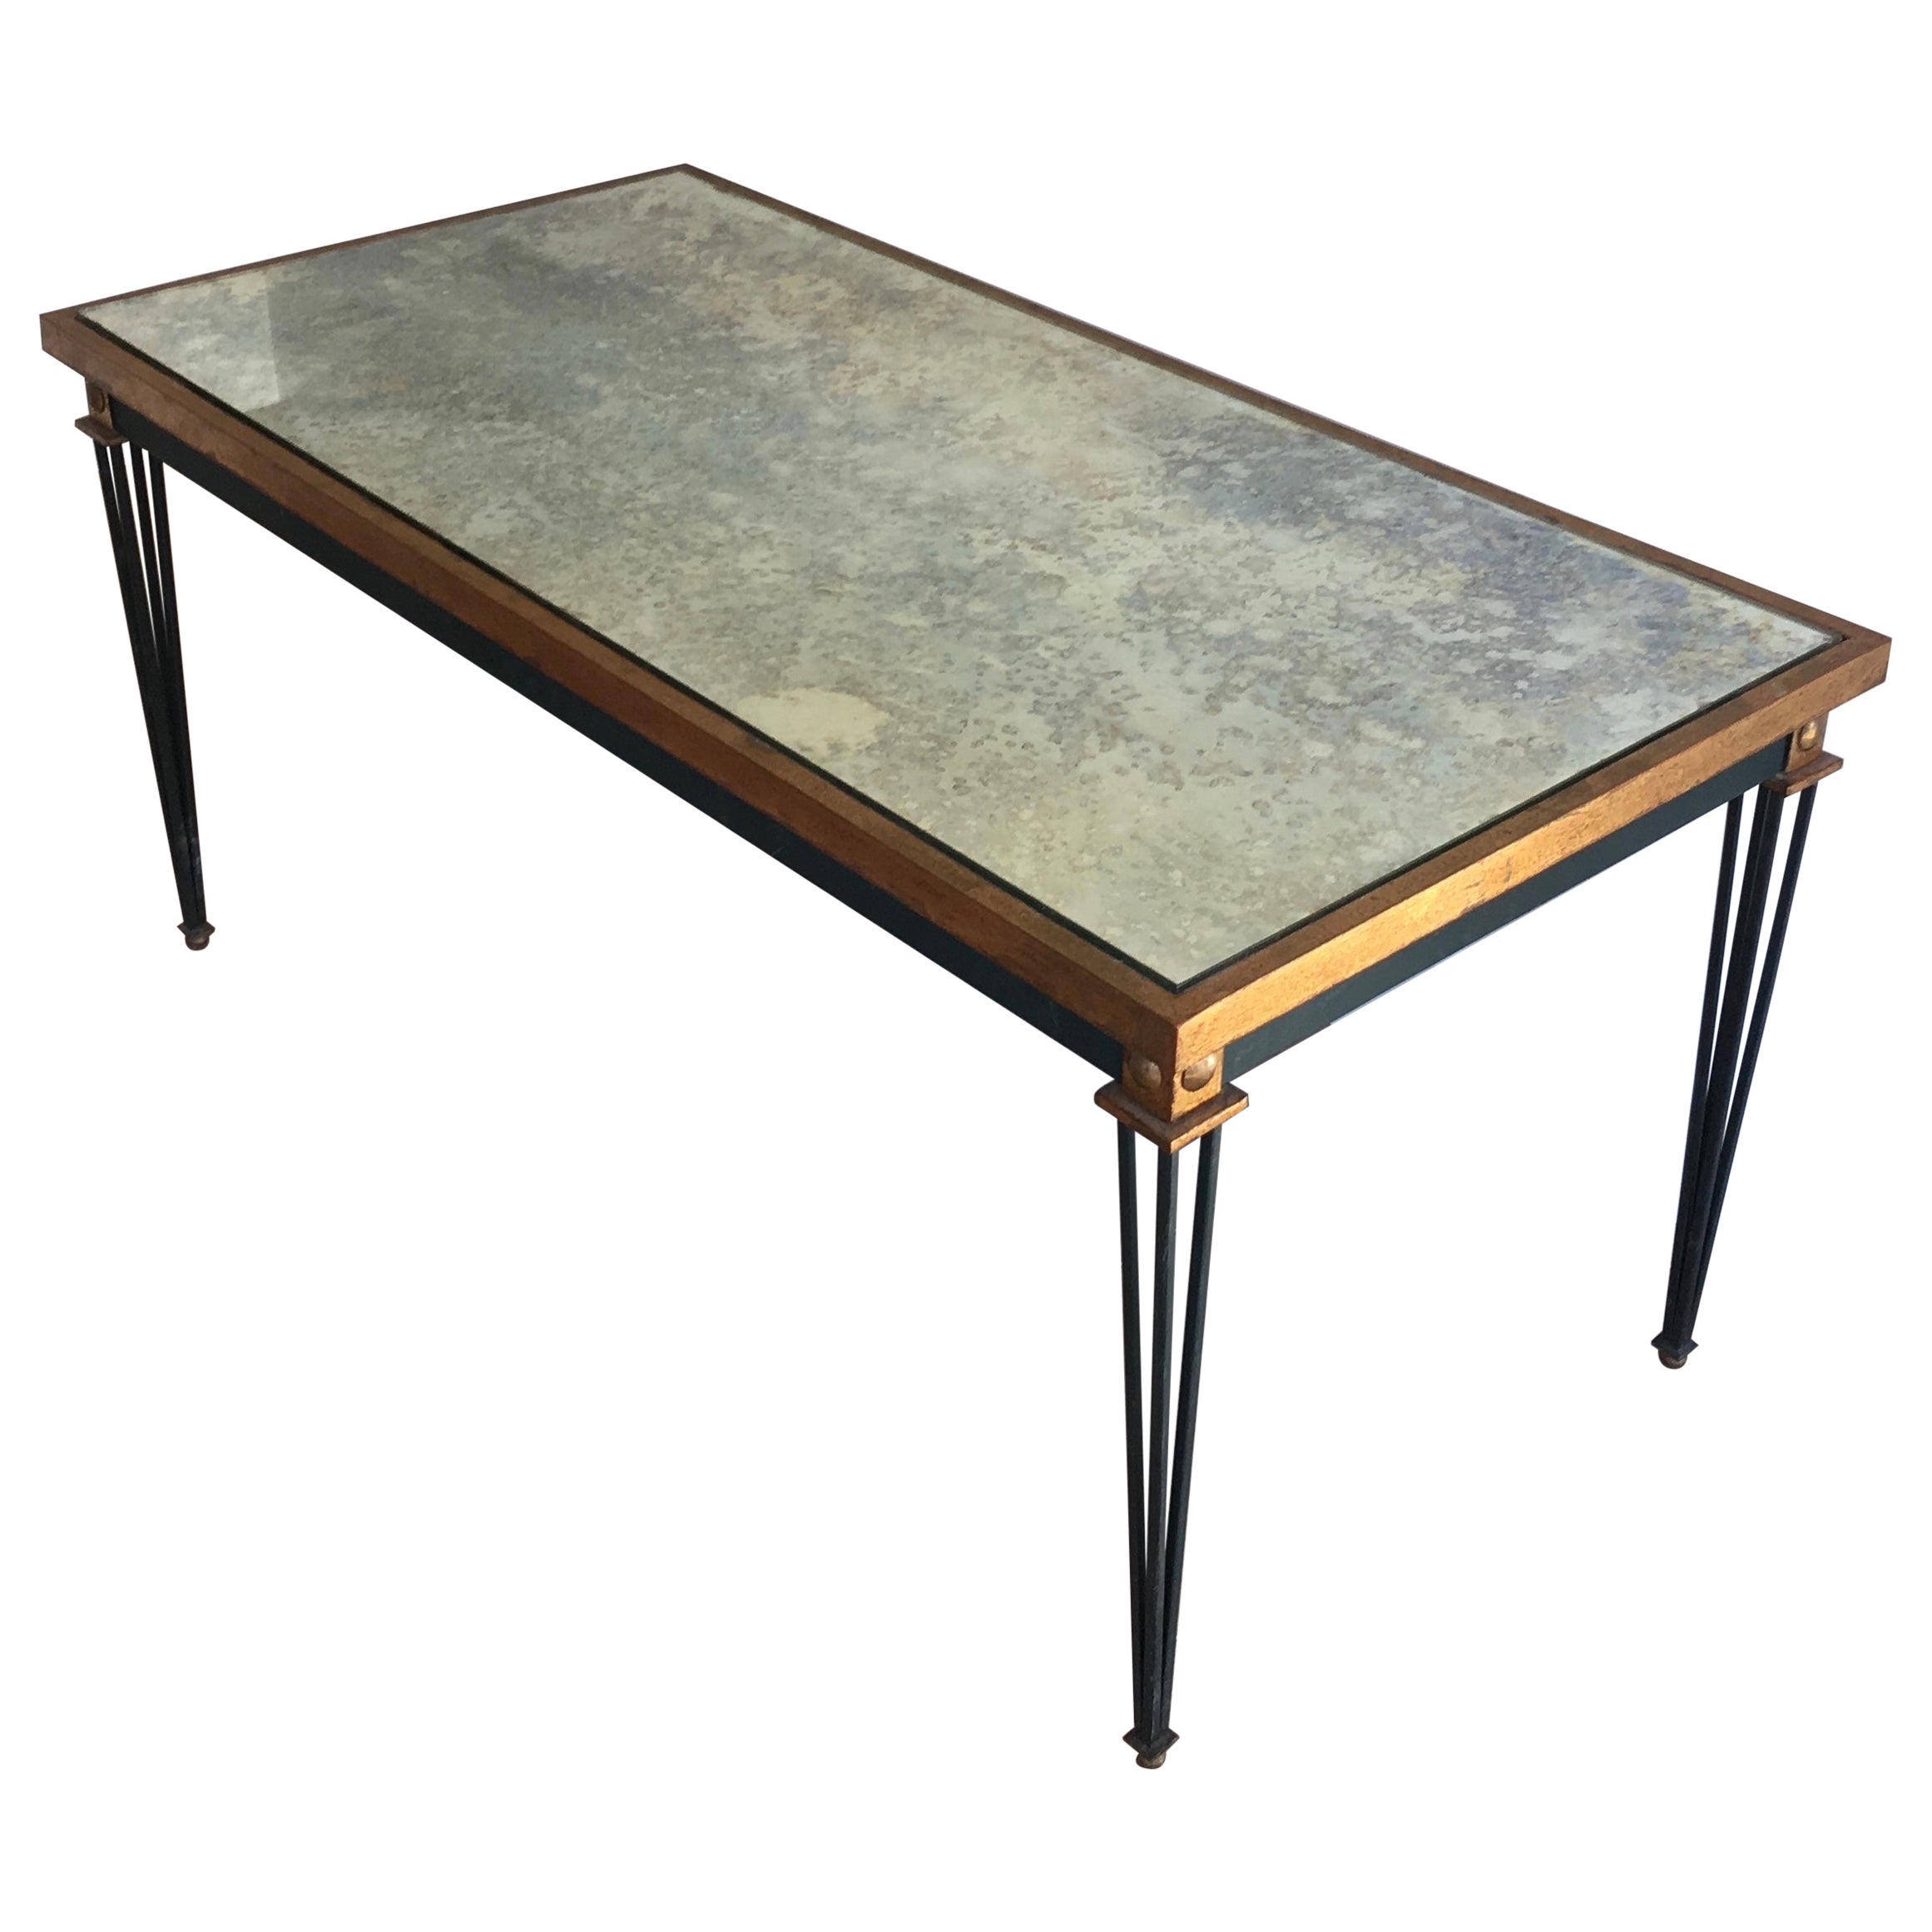 Table basse en acier peint et doré dans le style de Jacques Quinet